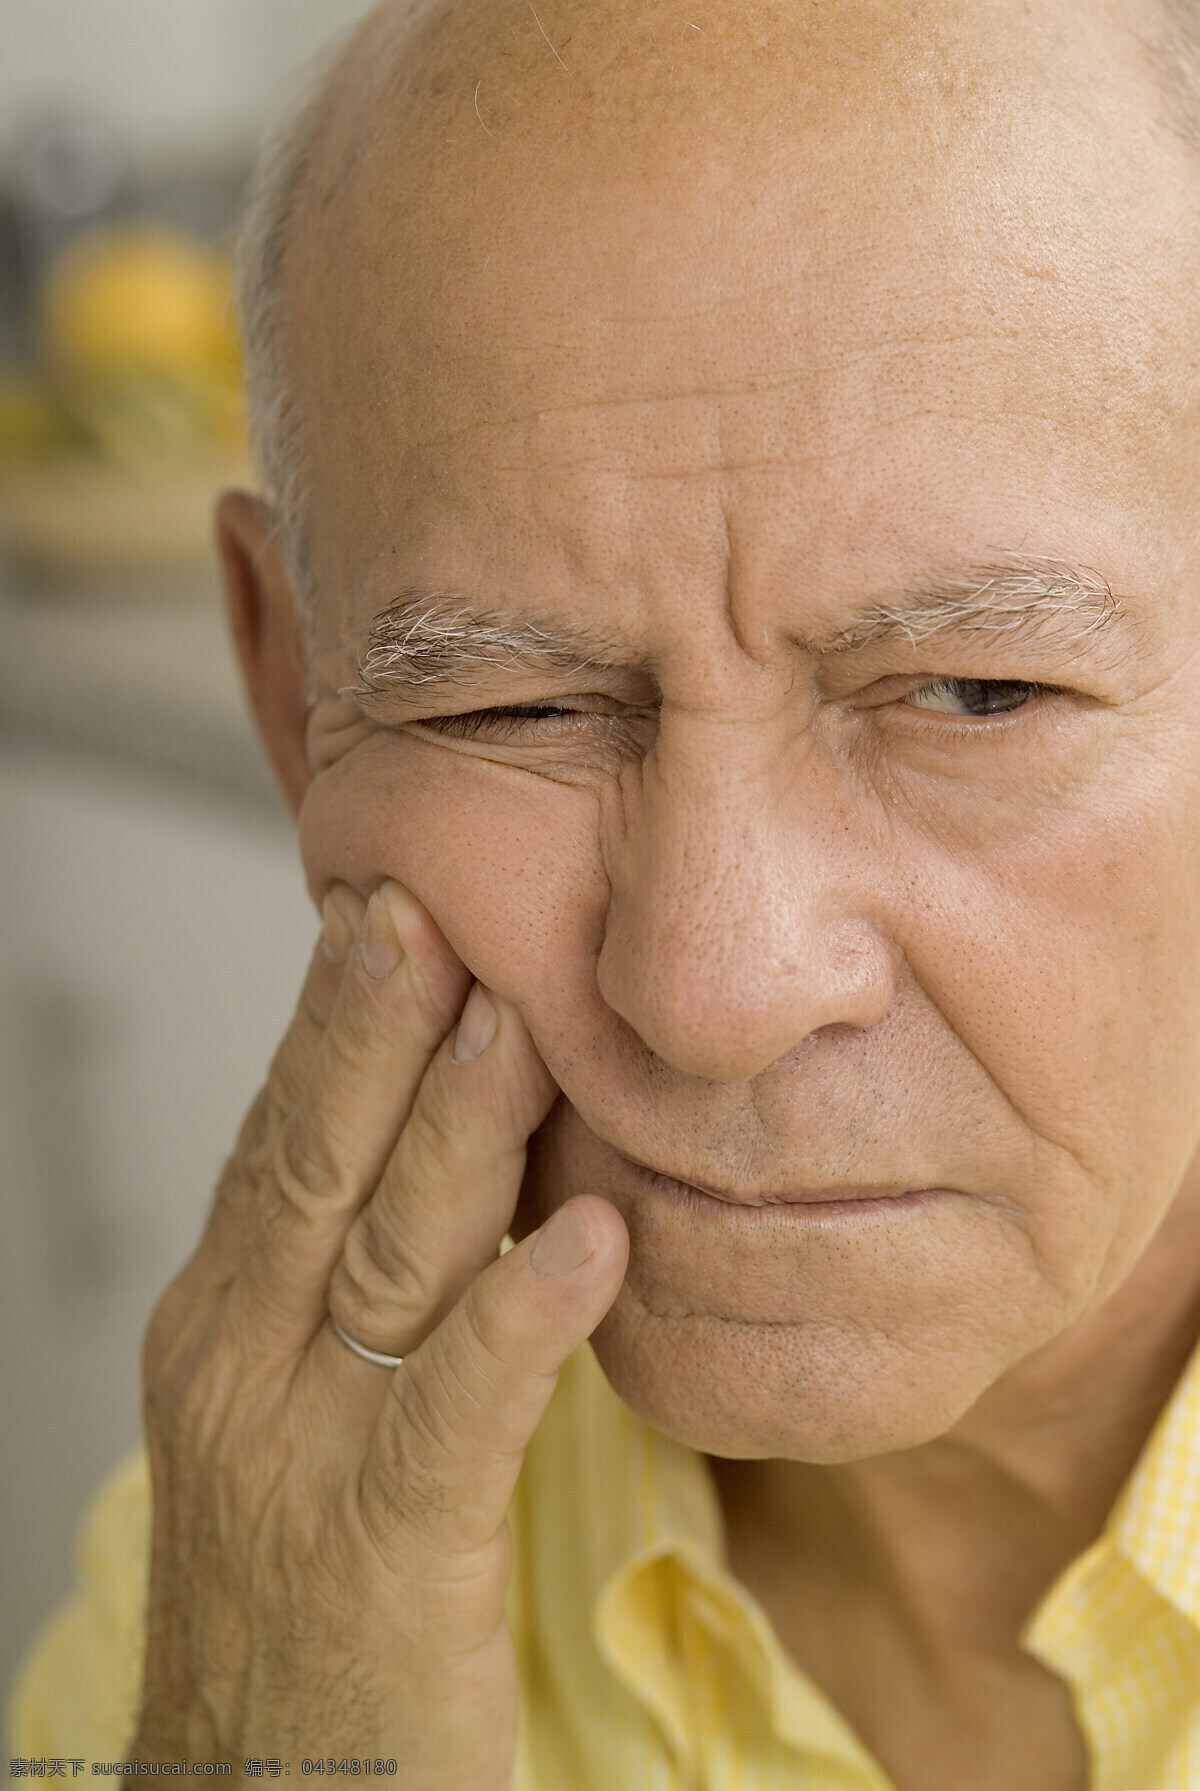 生病的老人 牙痛的老人 痛苦 老年人 高清 老人 表情 人物表情 老年人表情 老年人物 人物图库